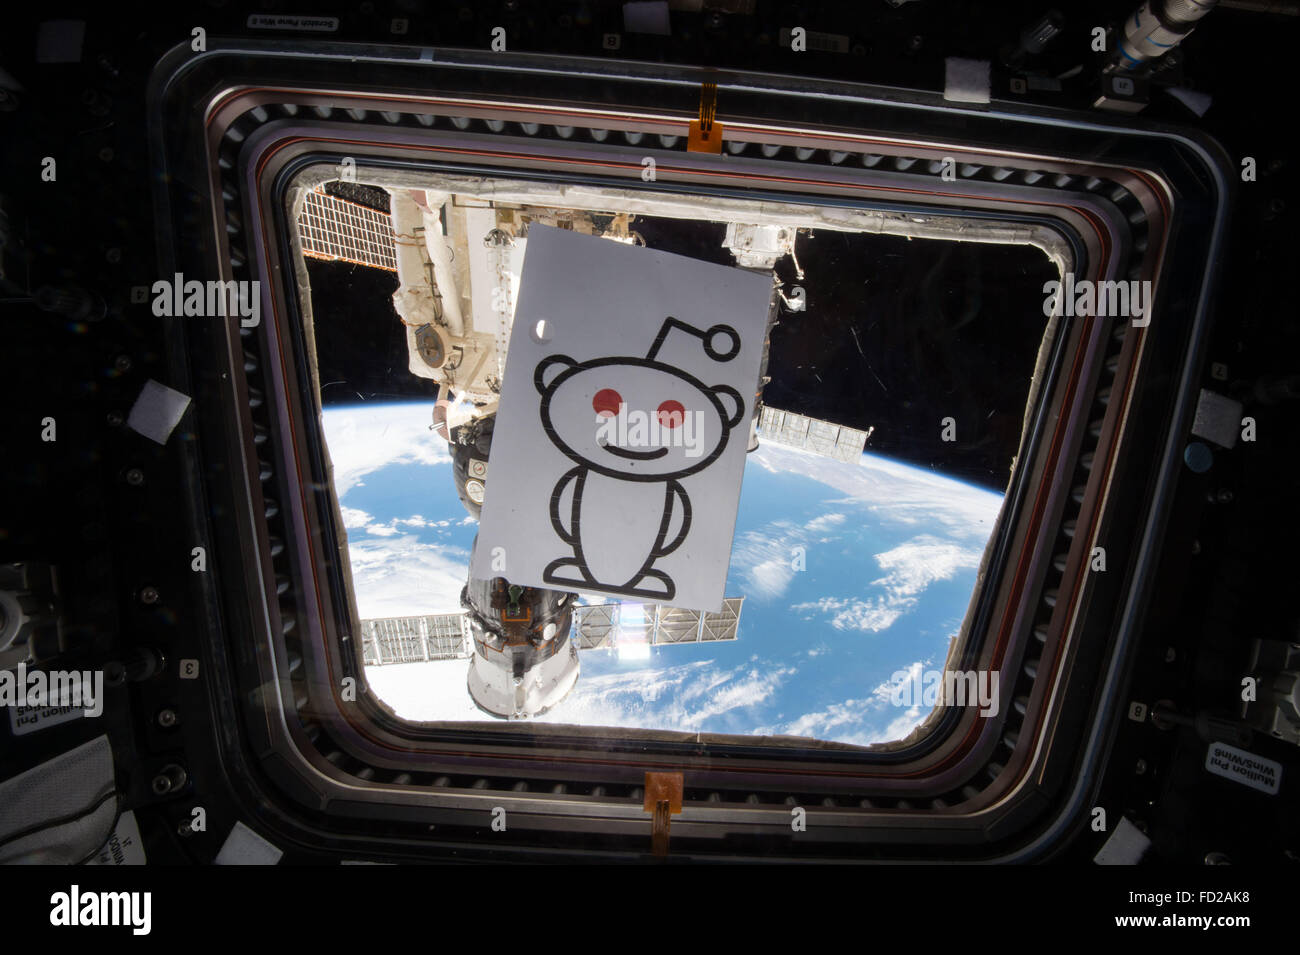 Il logo Reddit pende da una finestra nella Stazione Spaziale Internazionale cupola come astronauta americano Scott Kelly ha condotto il primo NASA Reddit chiedetemi nulla dallo spazio chat Gennaio 24, 2016 in orbita intorno alla terra. Foto Stock